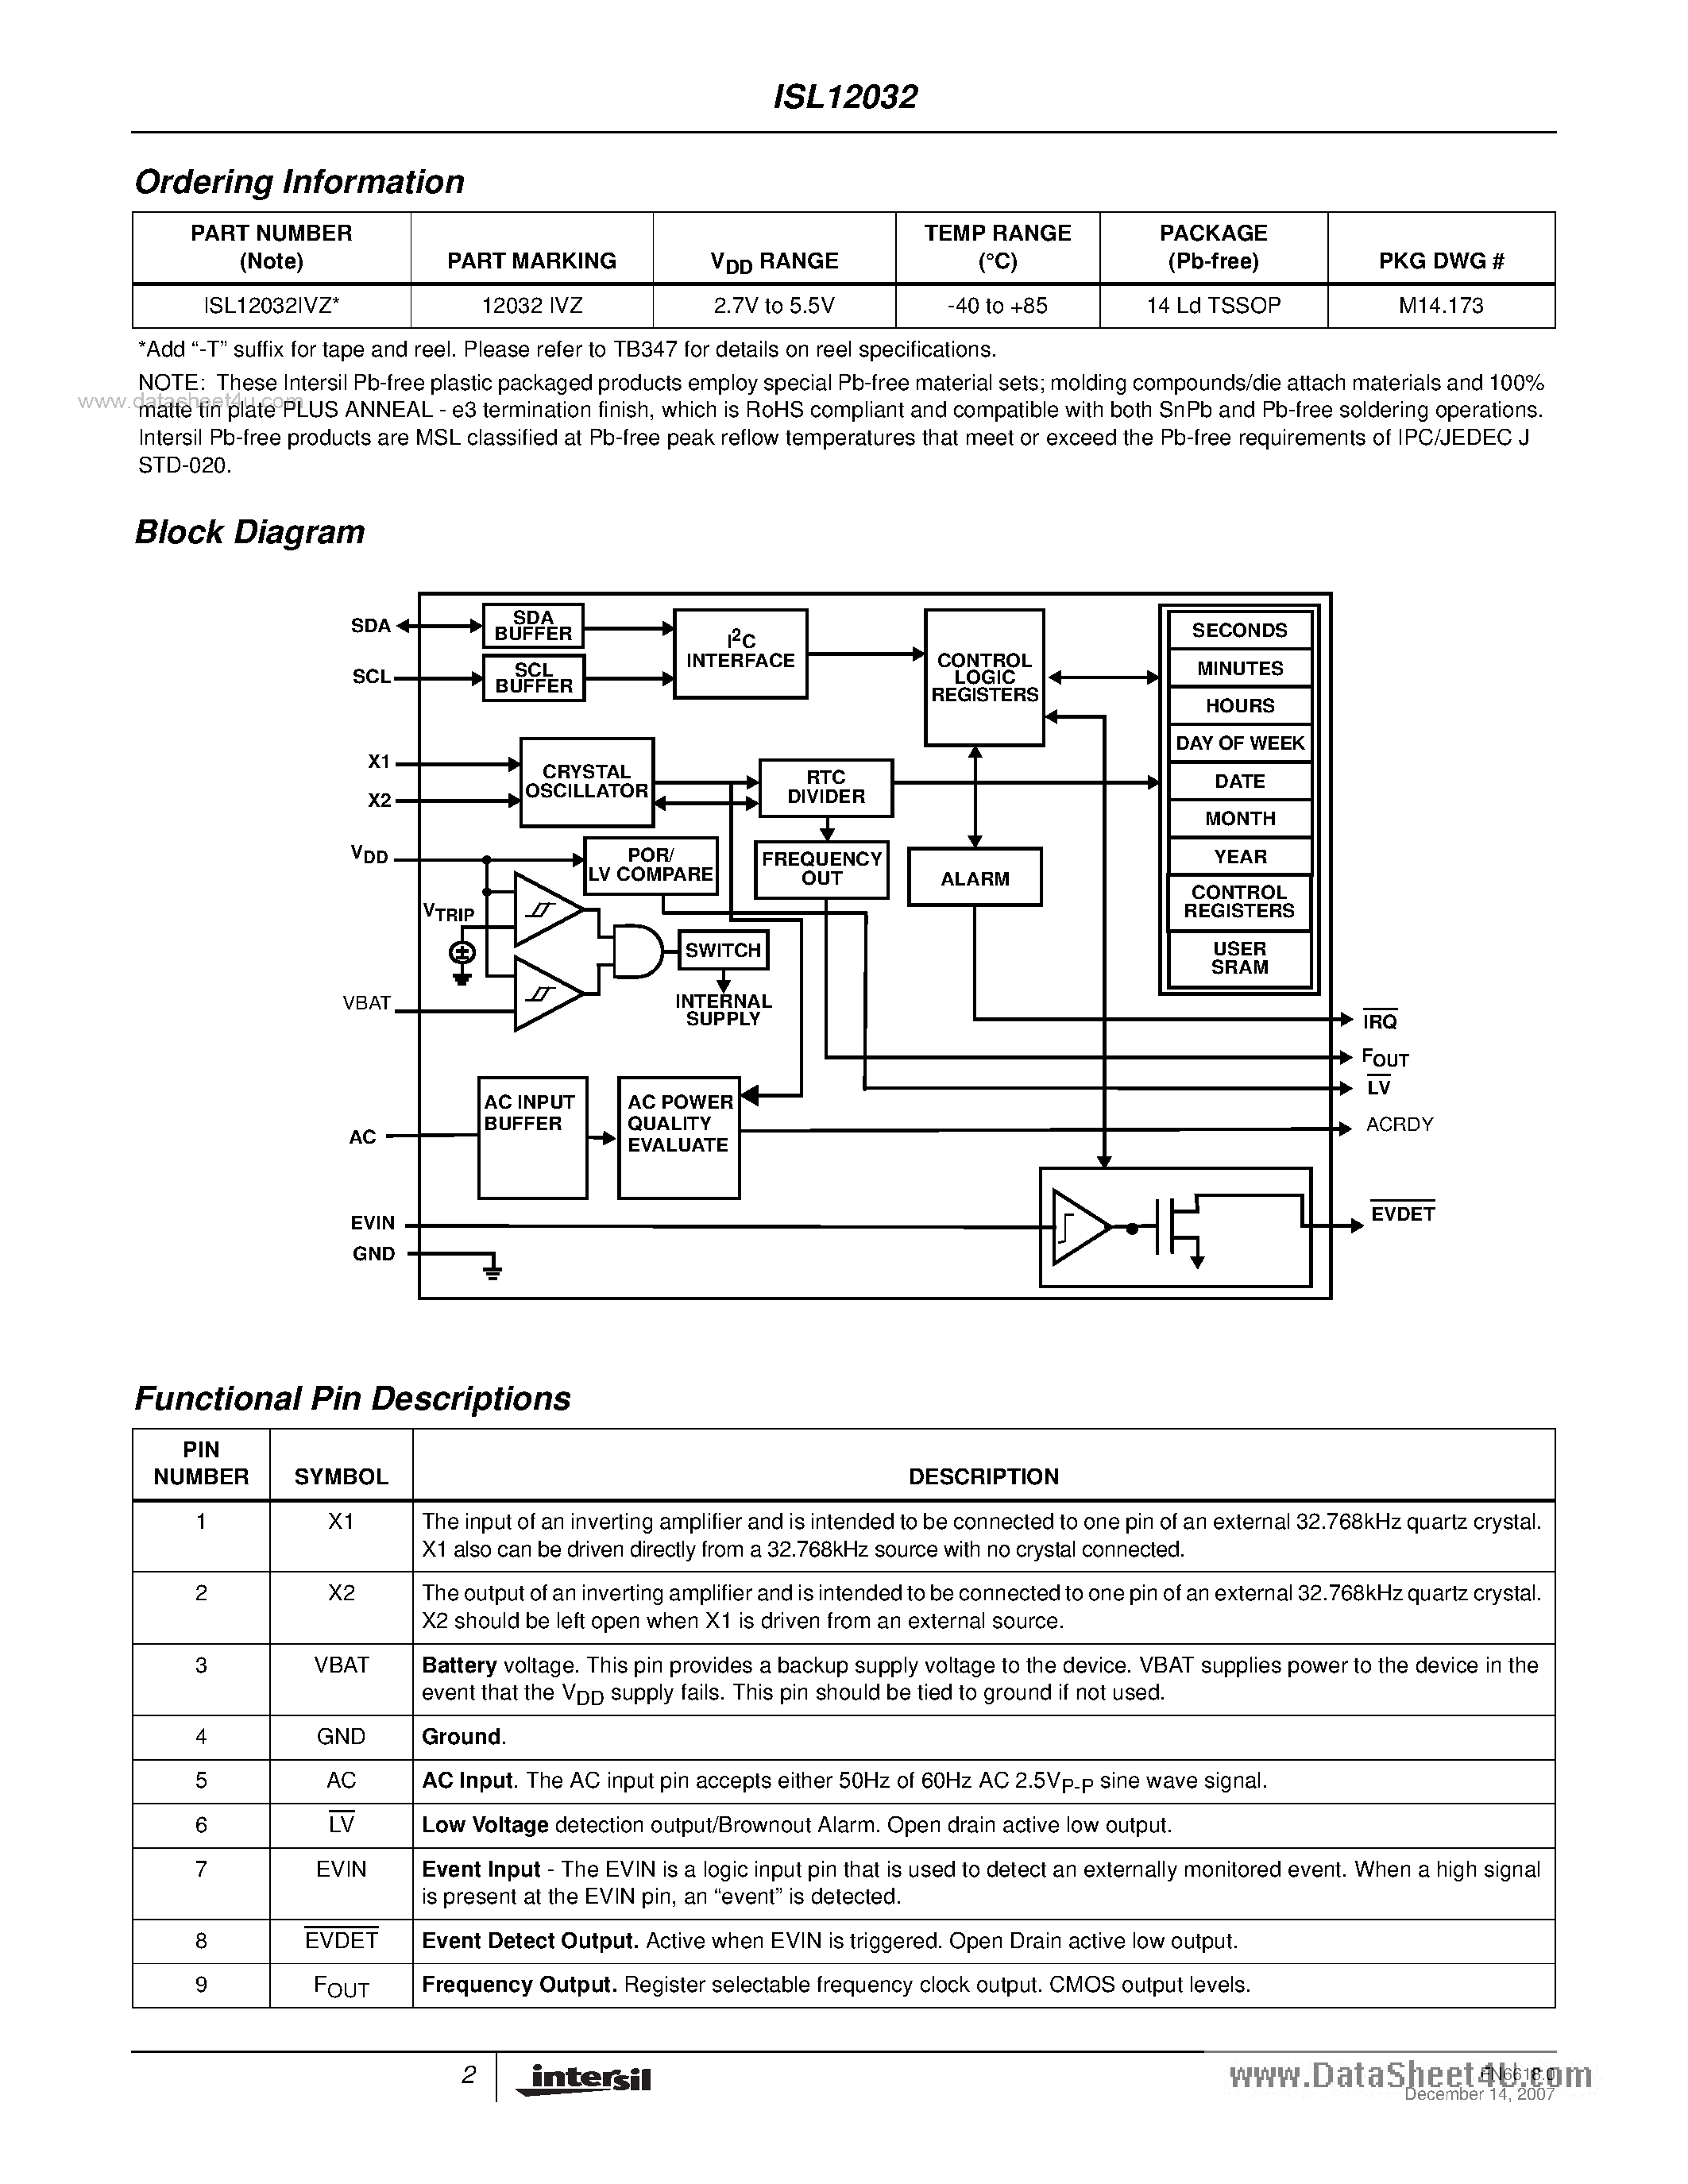 Даташит ISL12032 - Low Power RTC страница 2